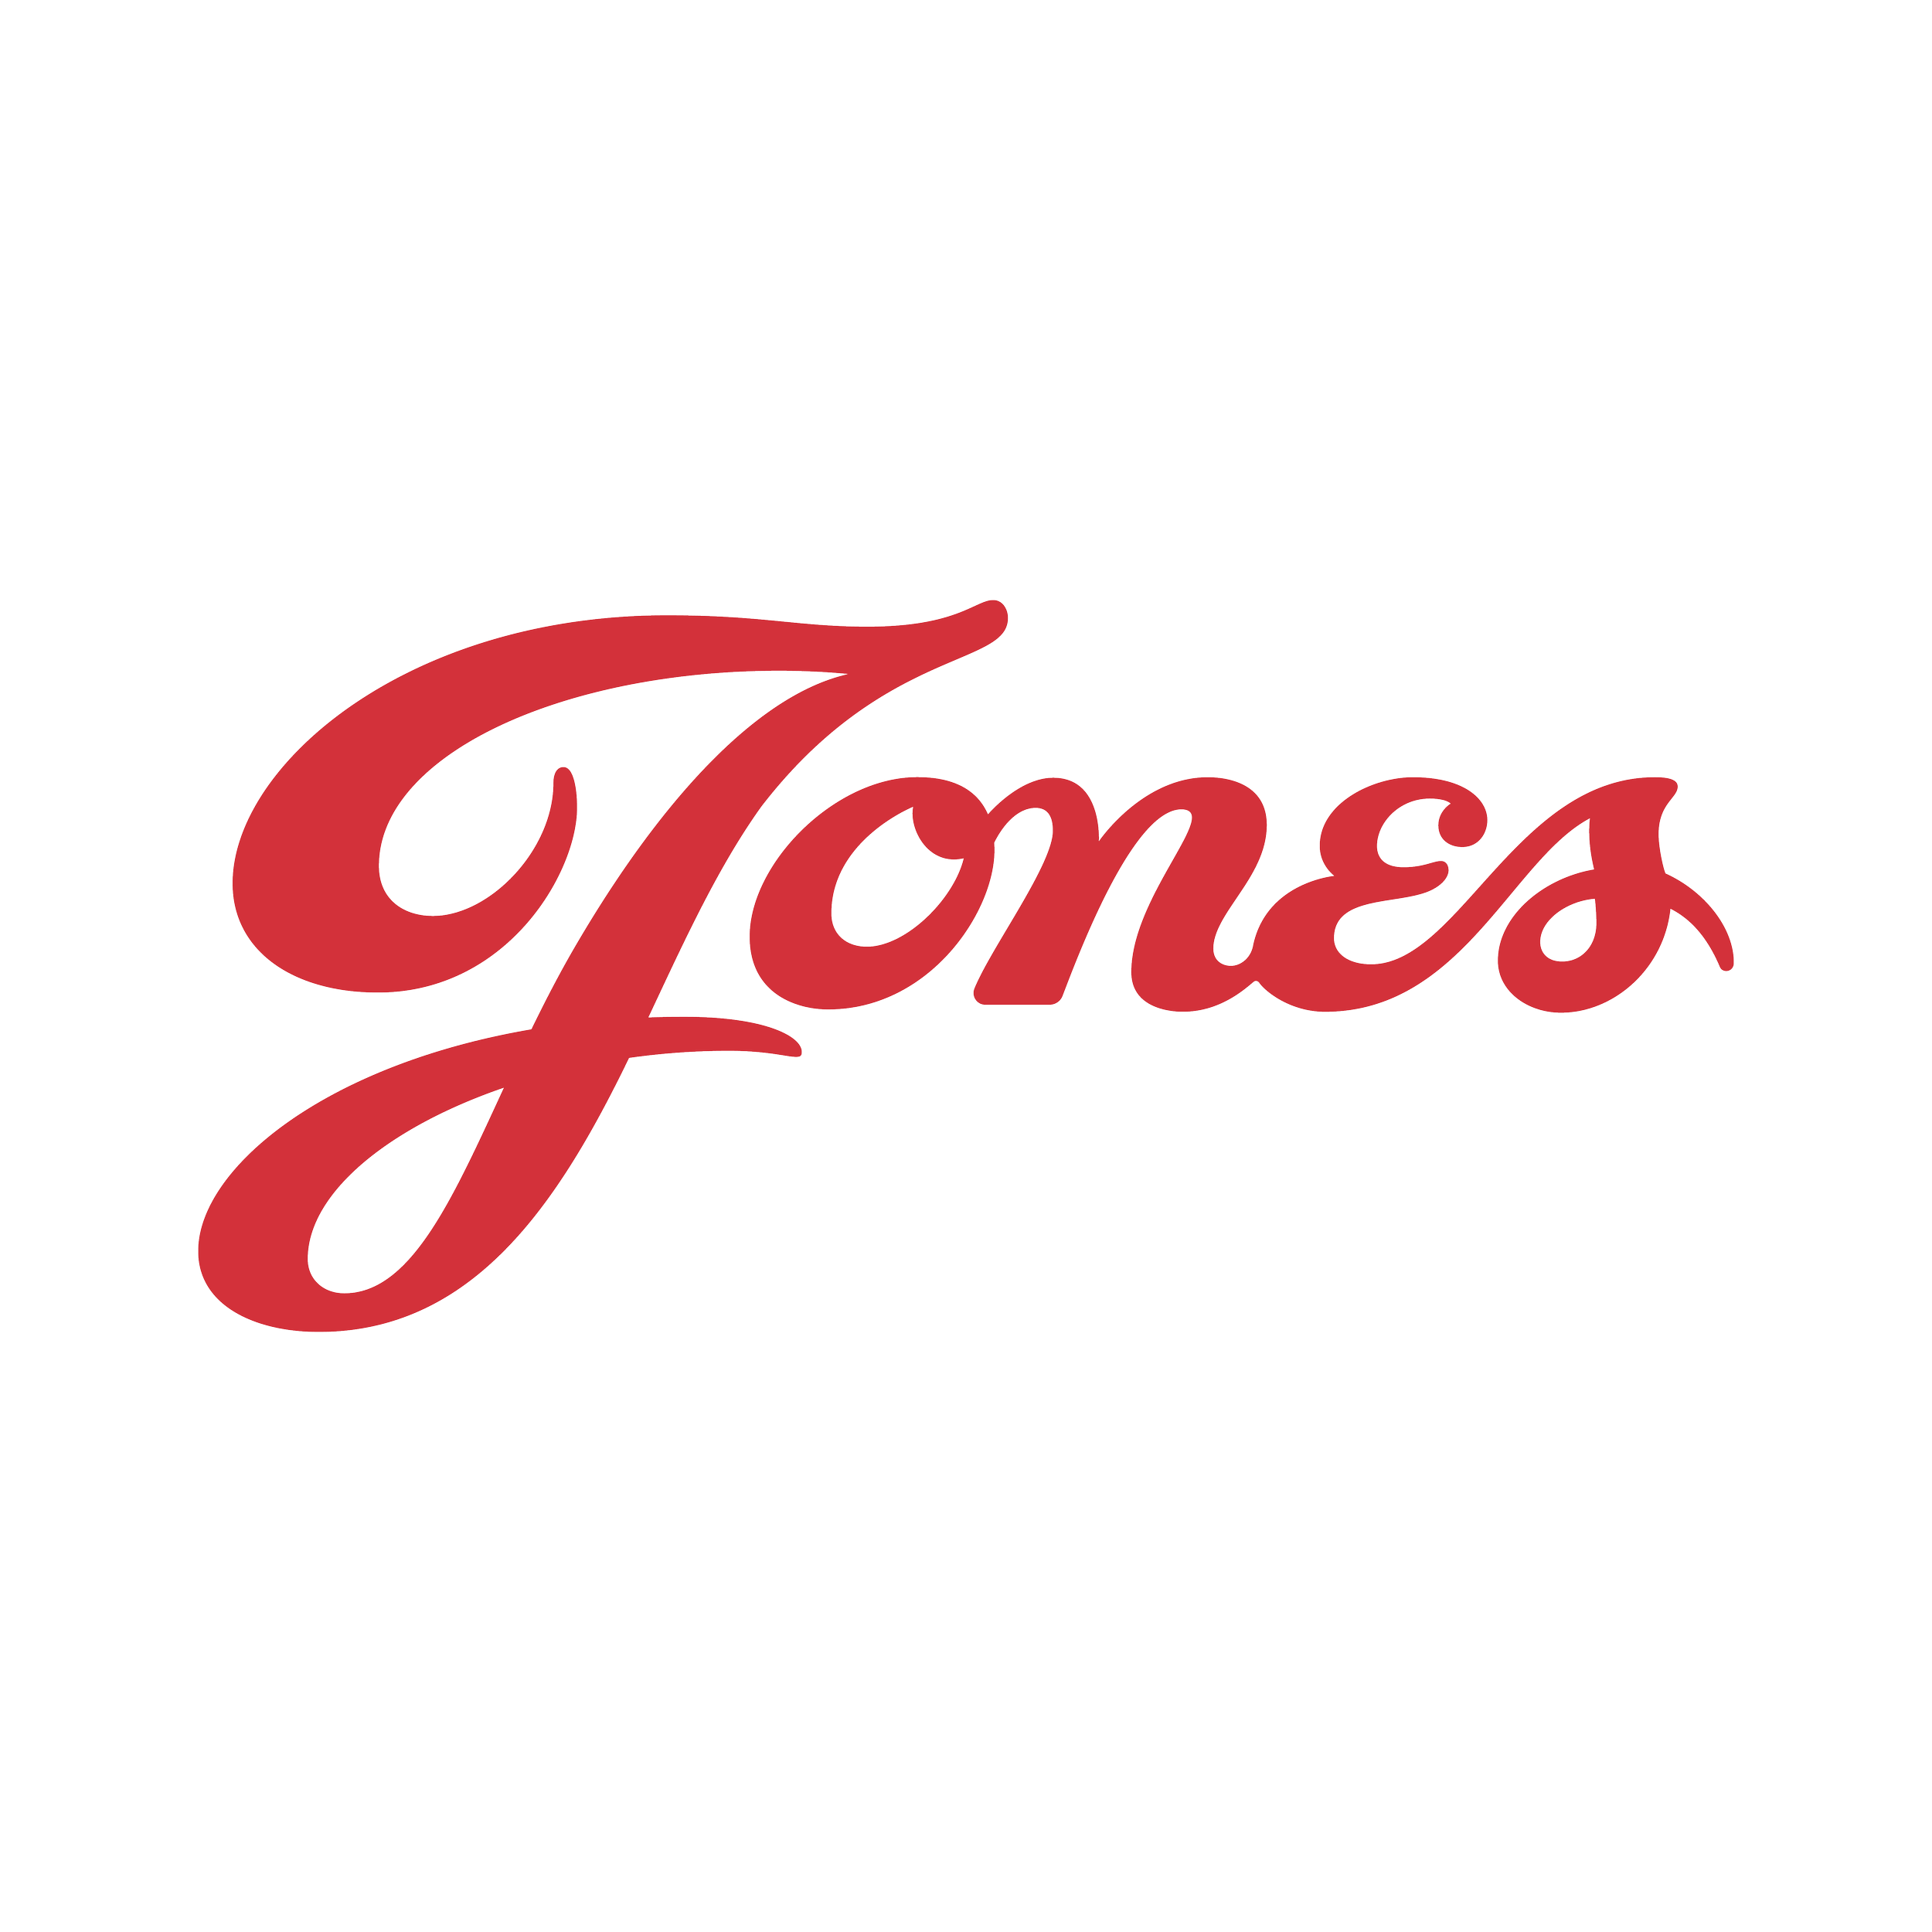 Jones Corporate.png